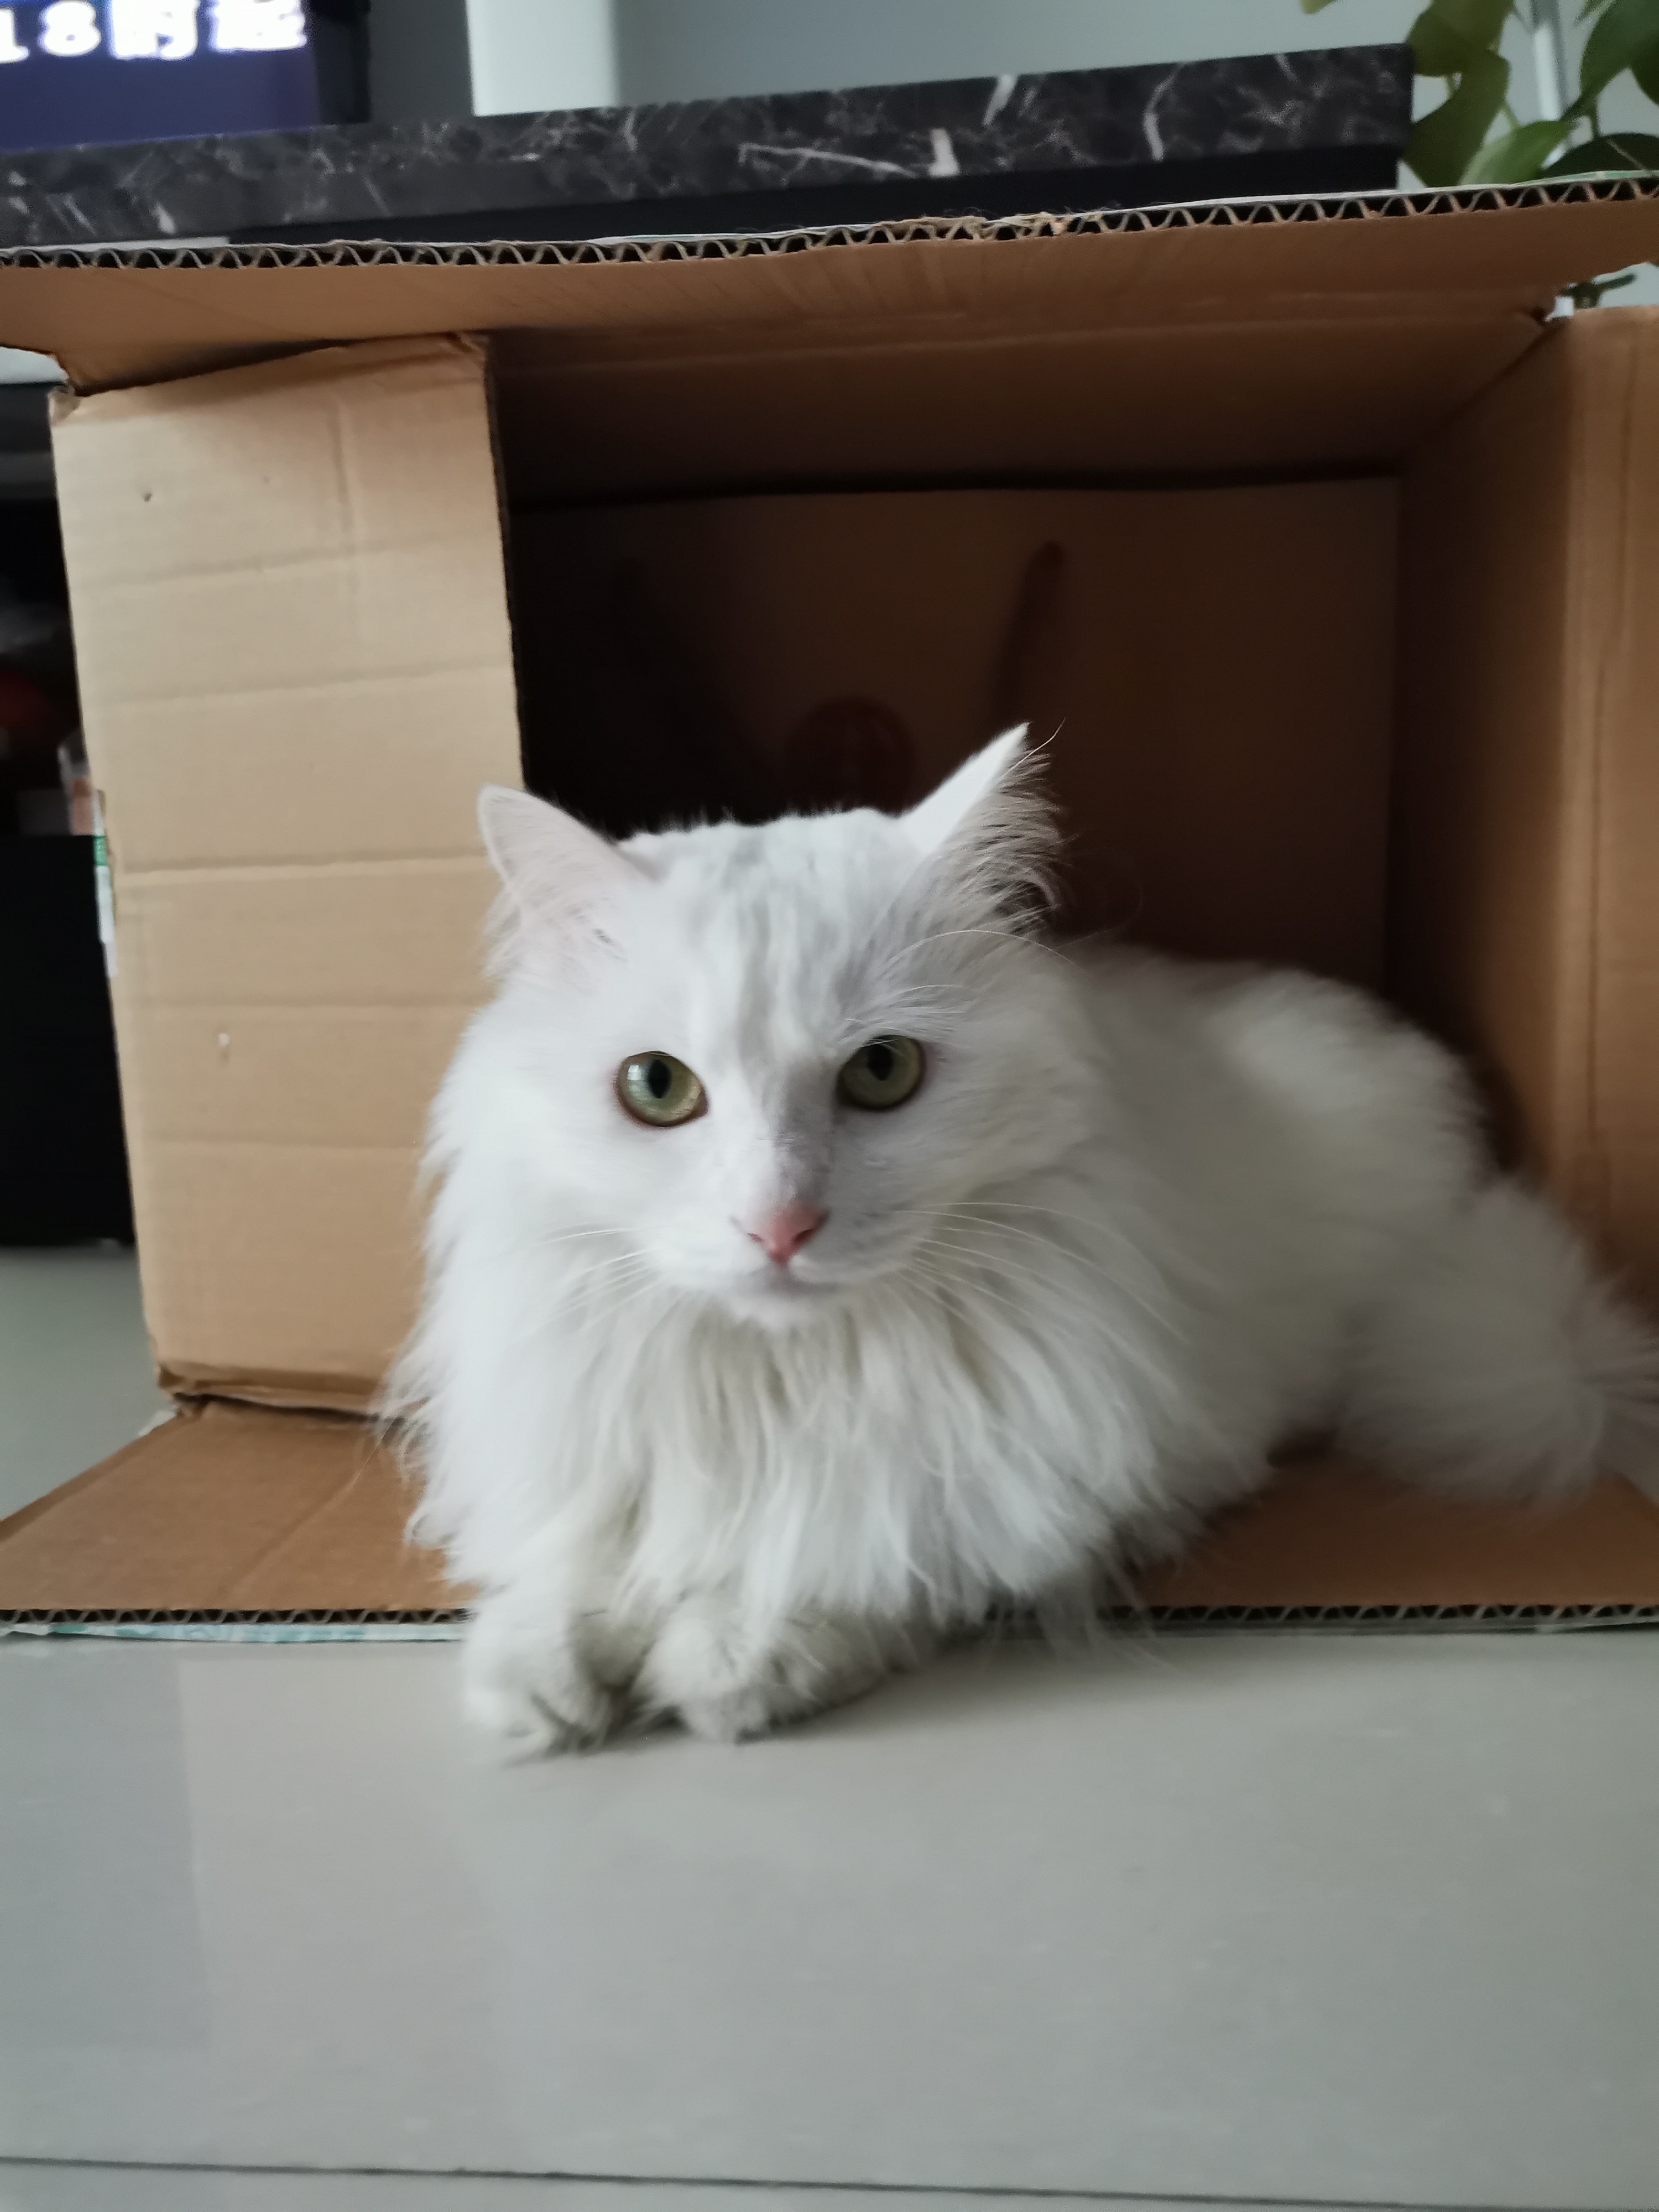 纸箱放久了会长出猫,箱子里会长出猫来,盒子放久了会长出猫,纸盒里会长出猫,猫